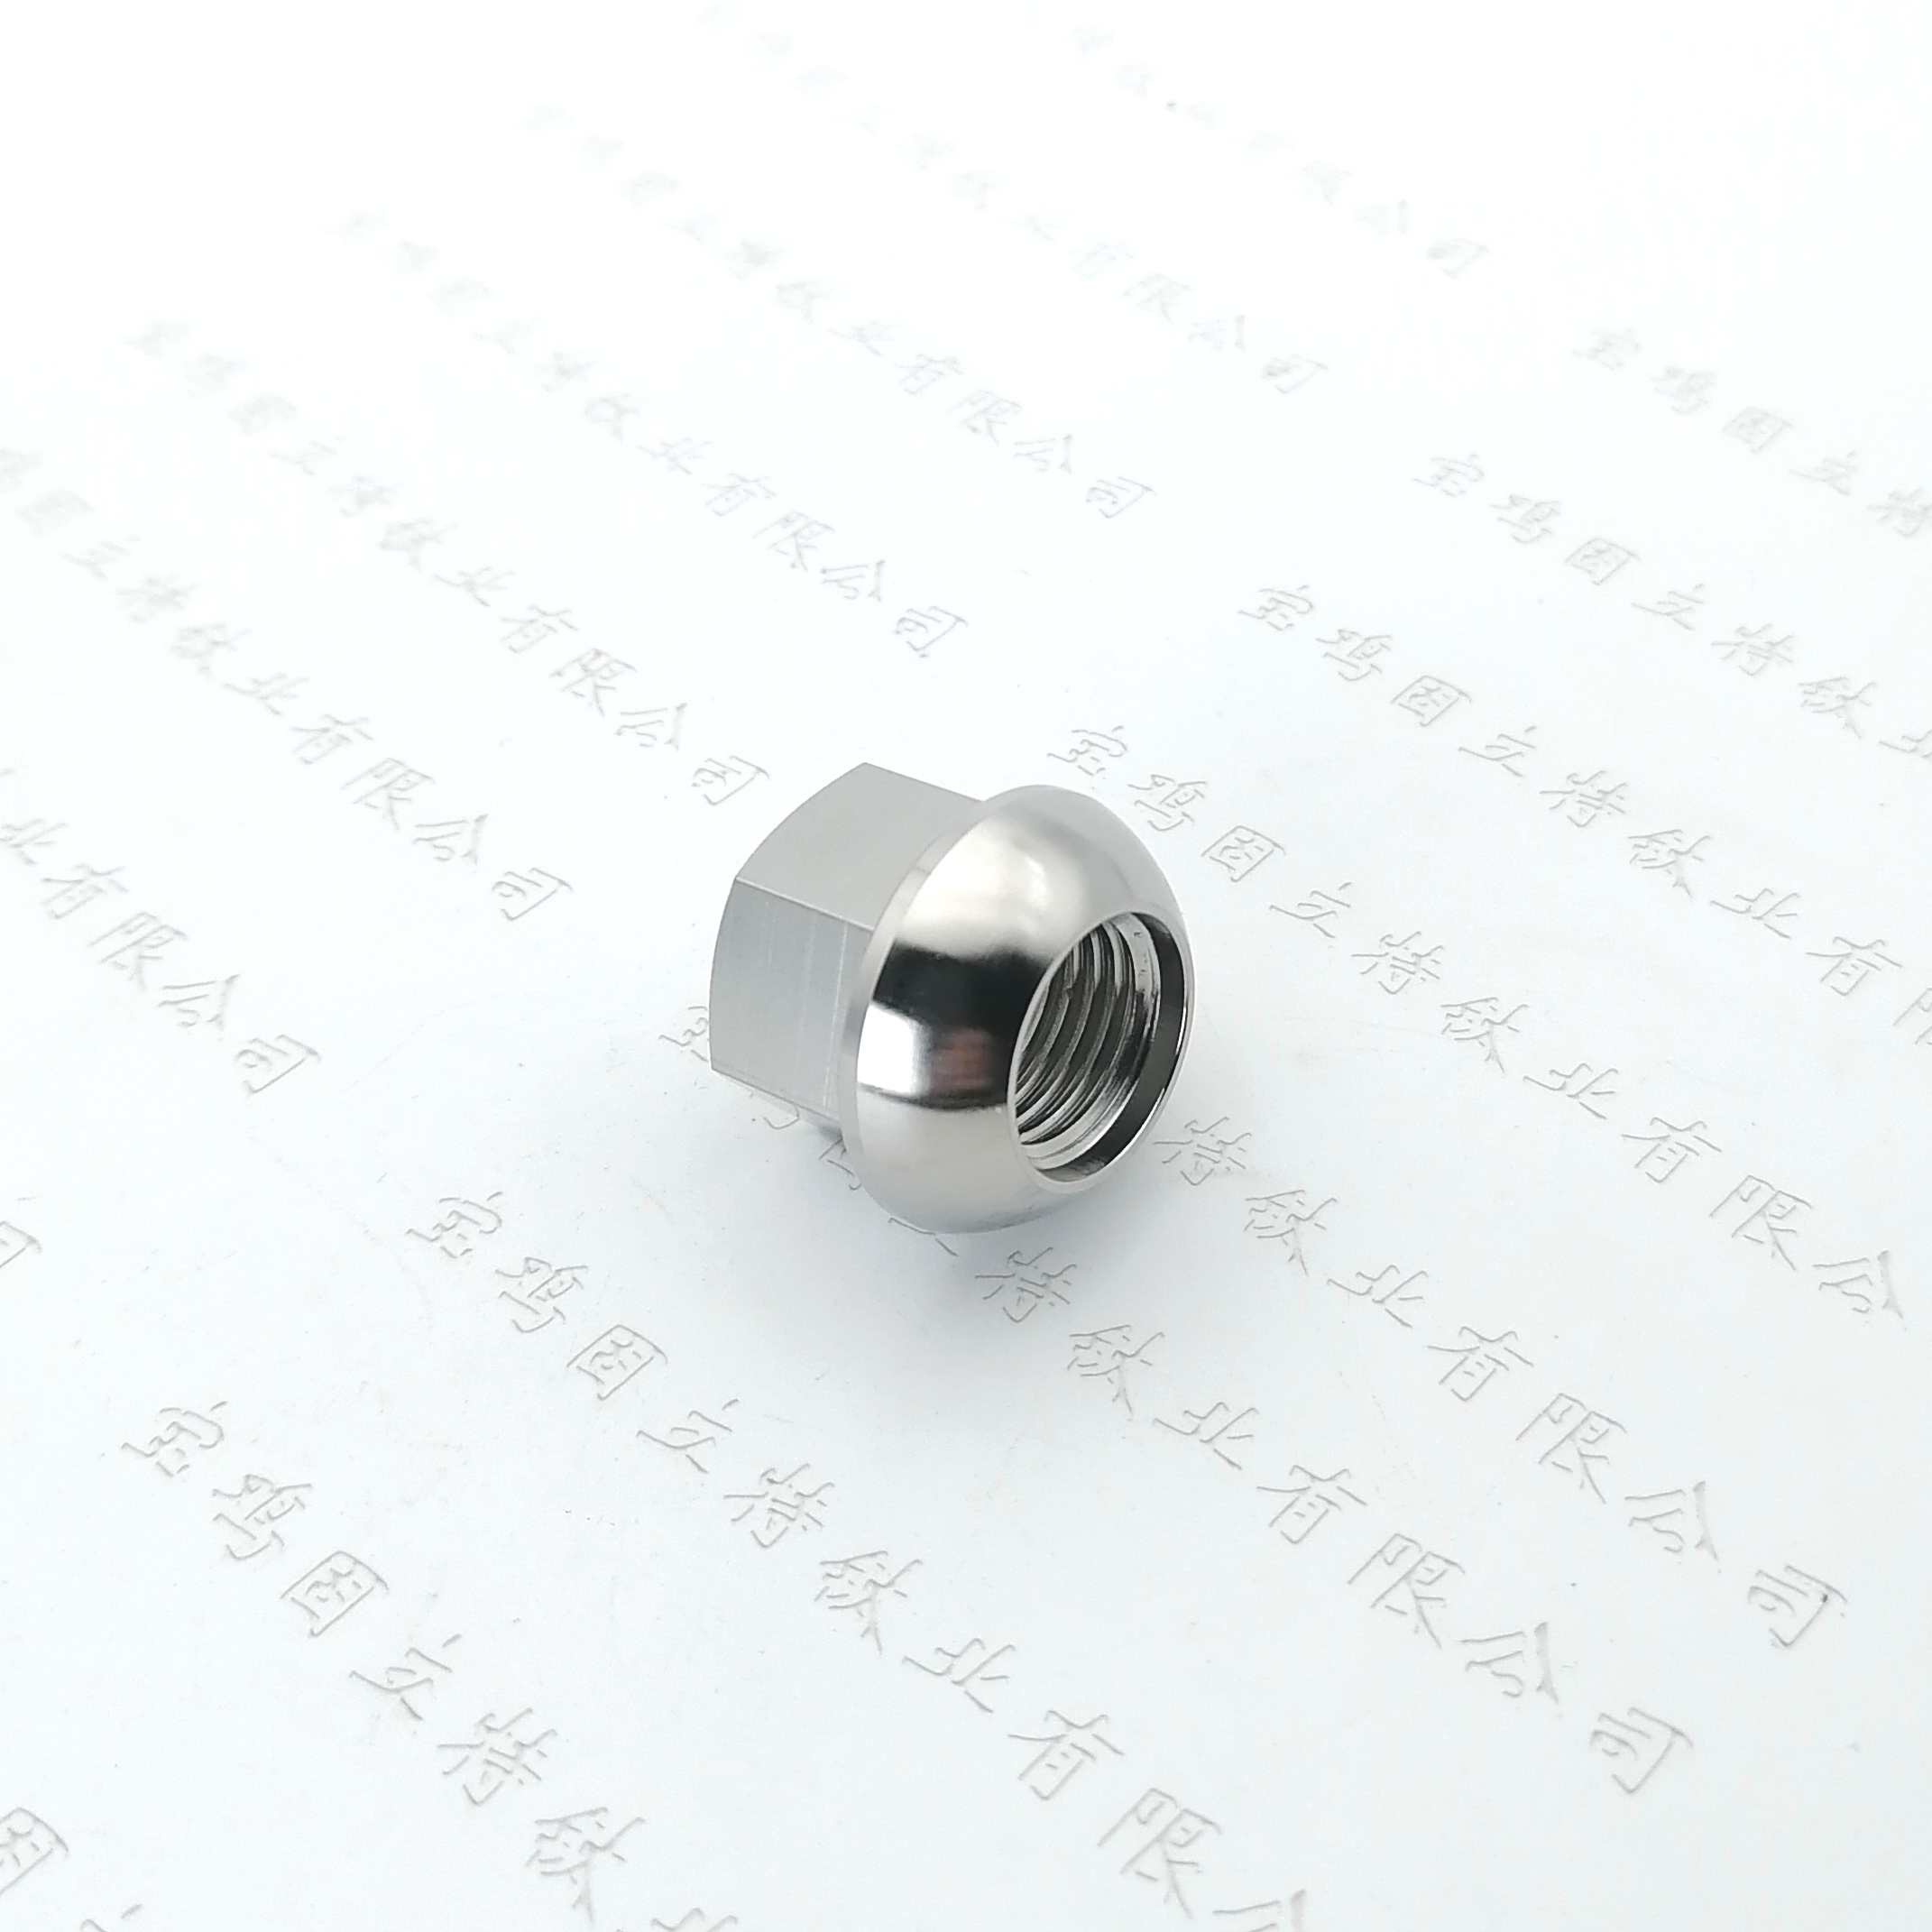 钛合金轮毂螺母M14-1.5×20球面通孔改装加高法兰盘